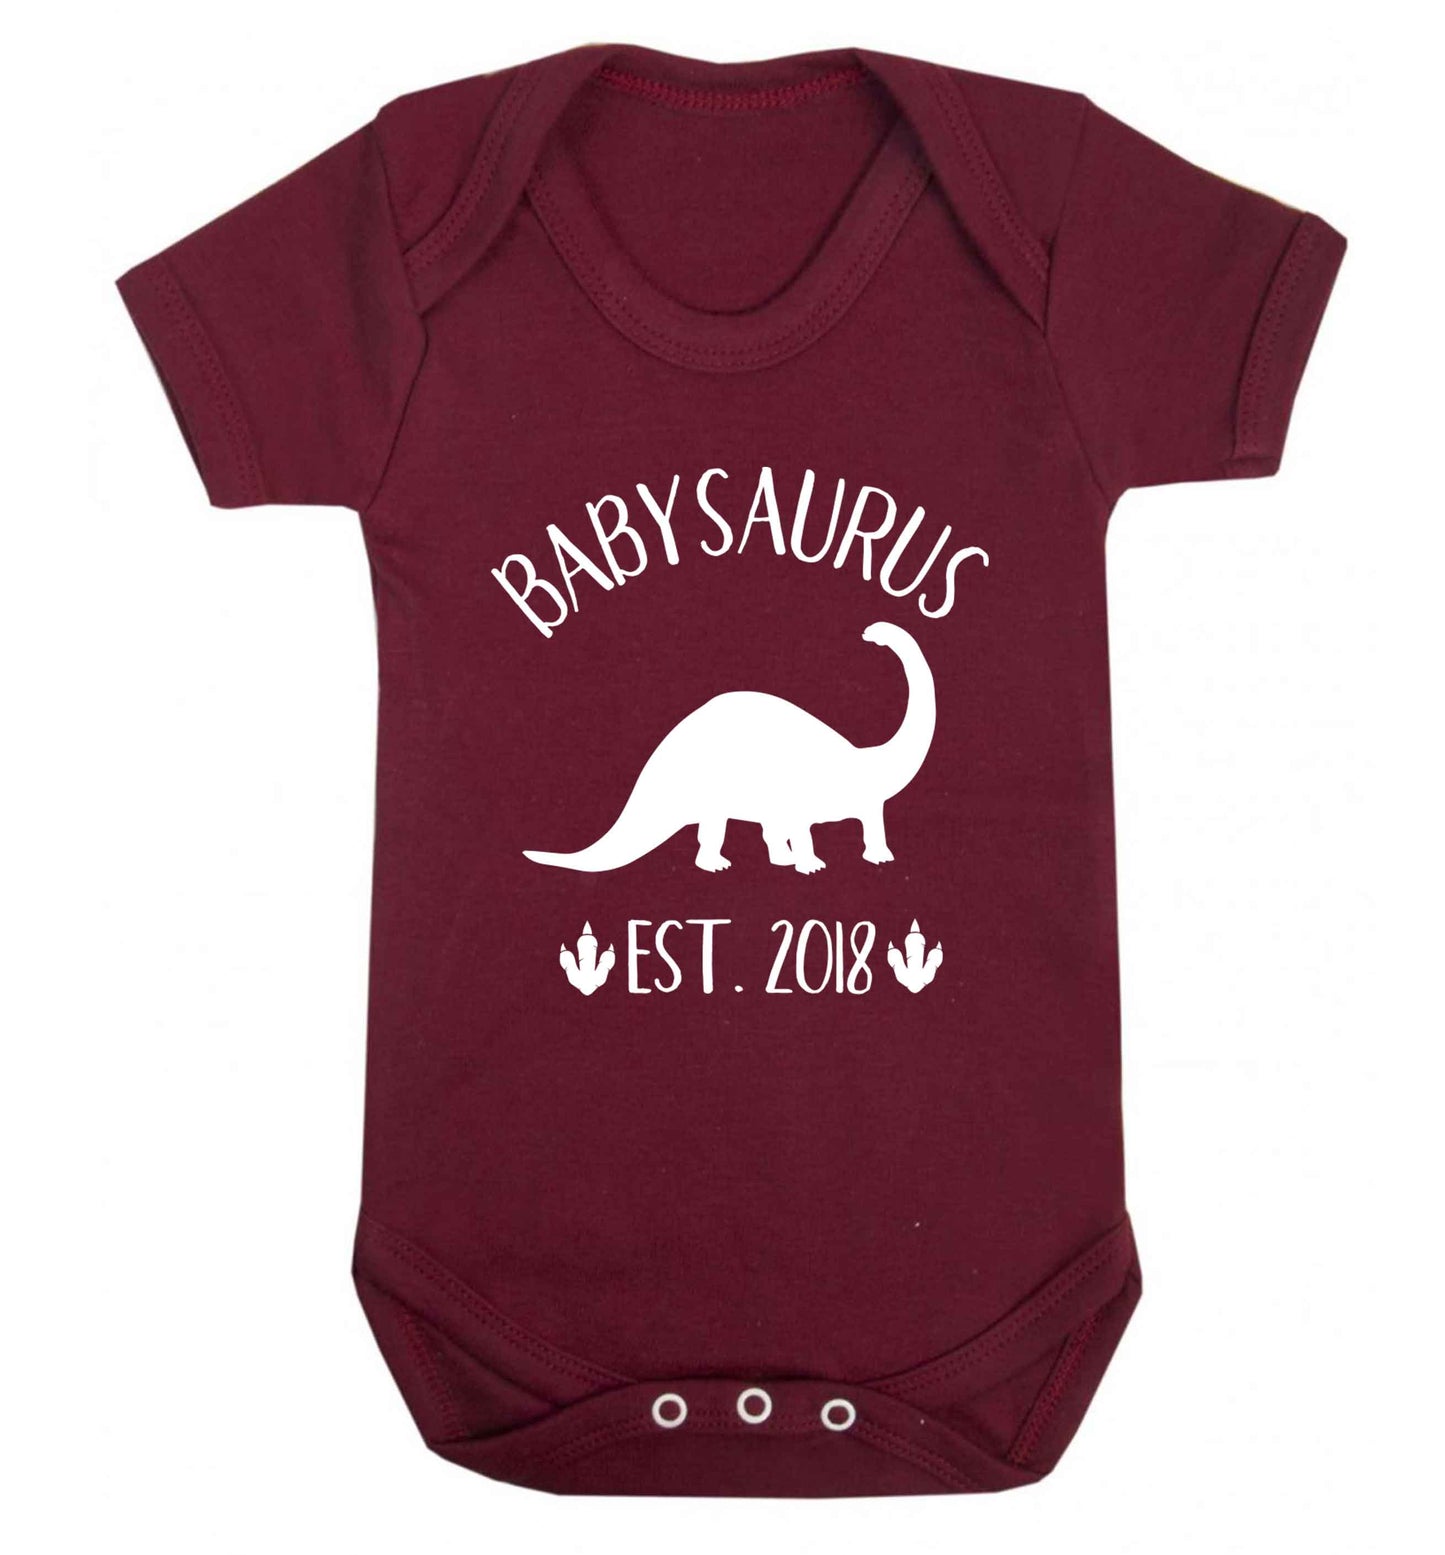 Personalised babysaurus since (custom date) Baby Vest maroon 18-24 months